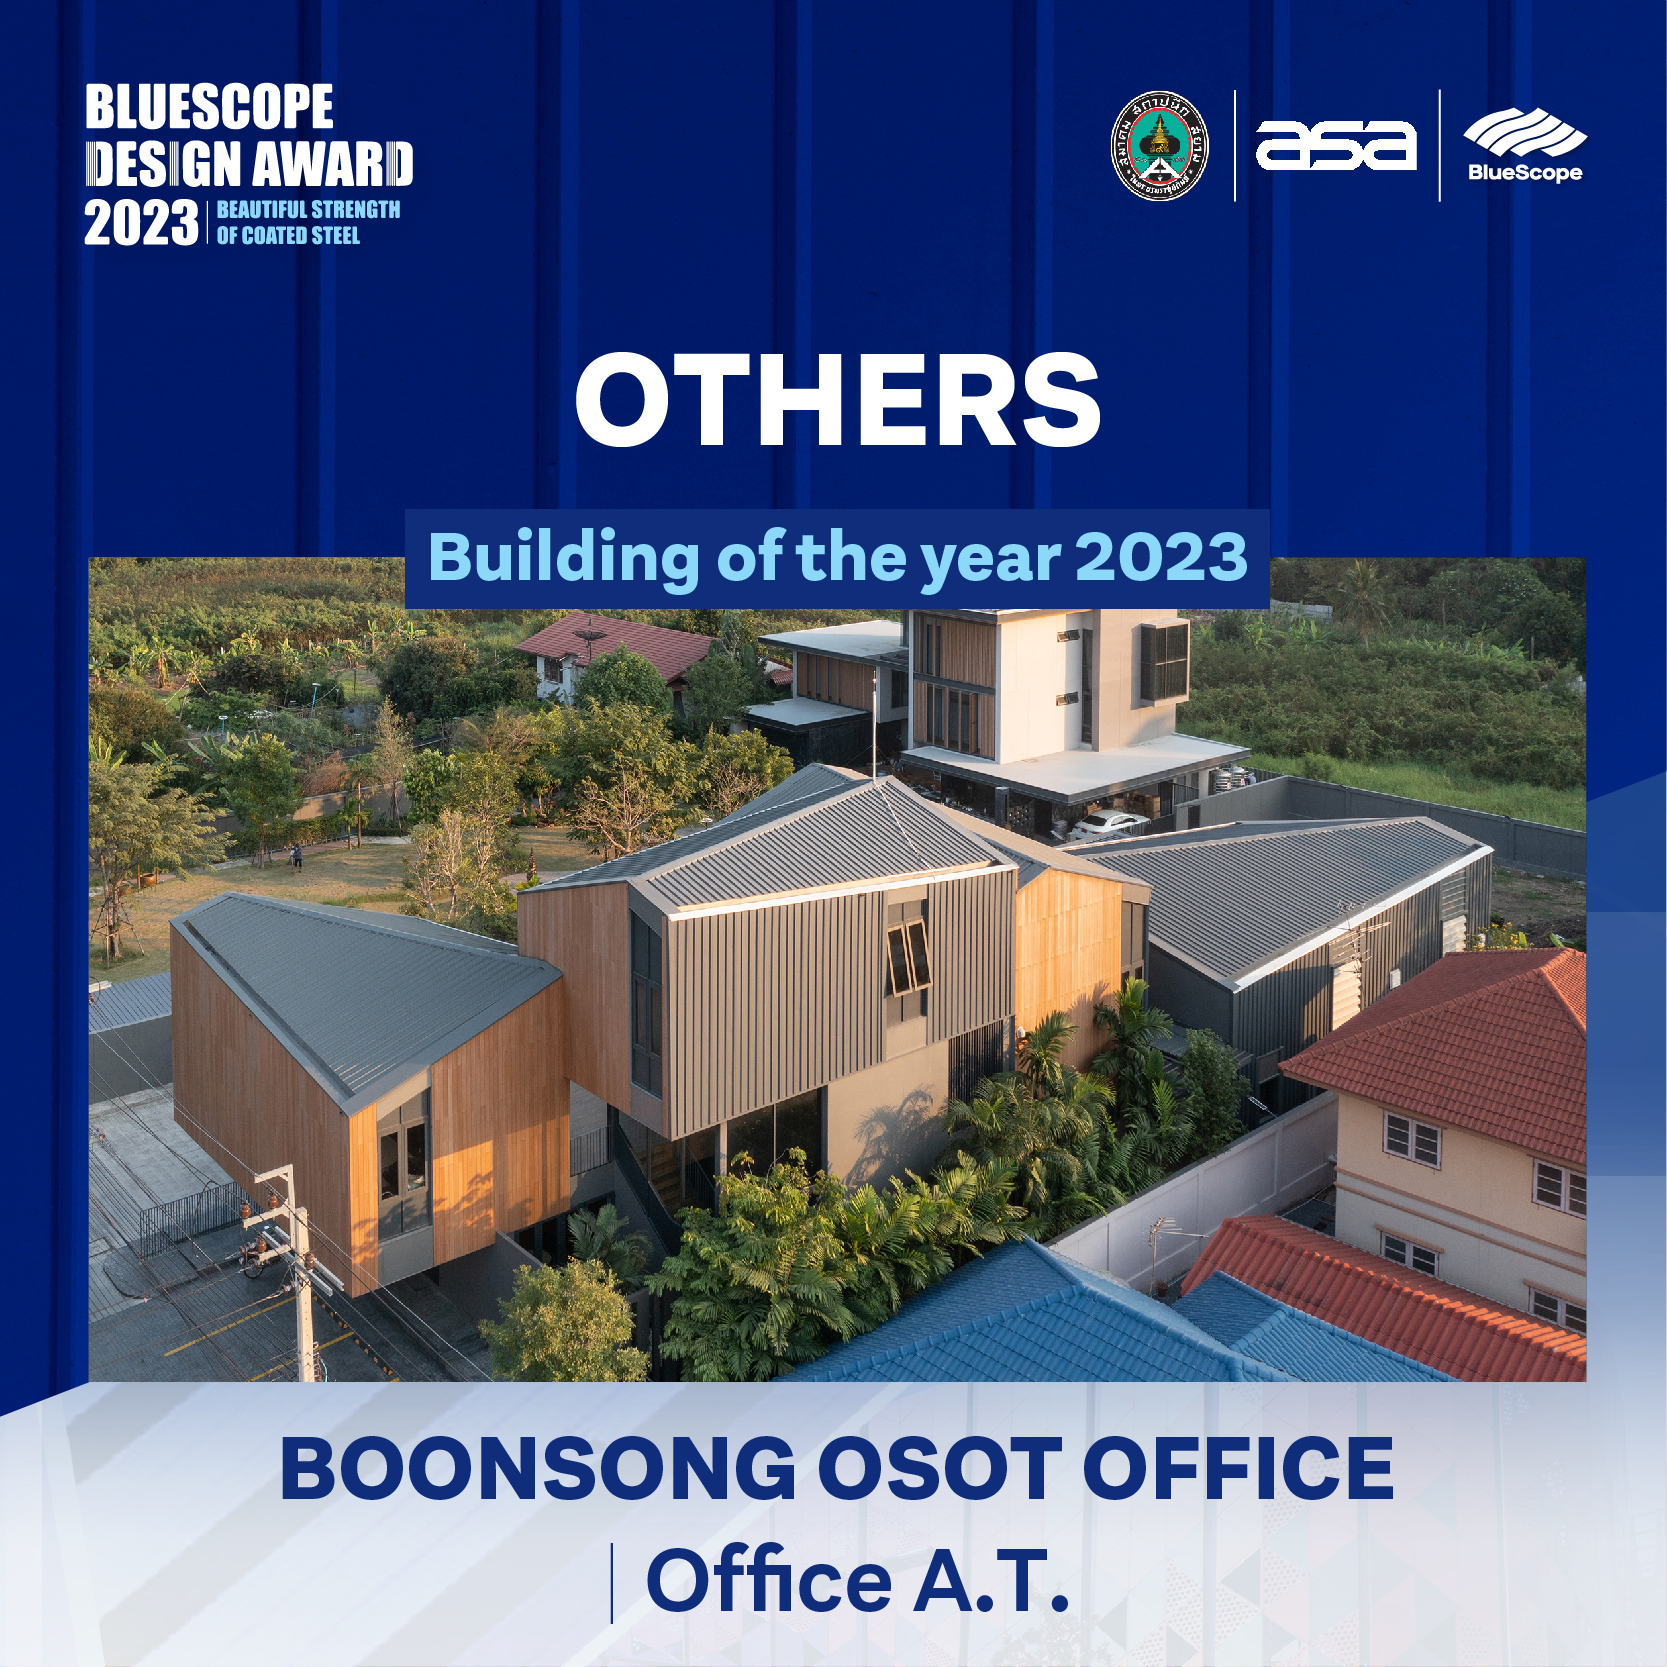 Boonsong Osot office win an Bluescope design award 2023